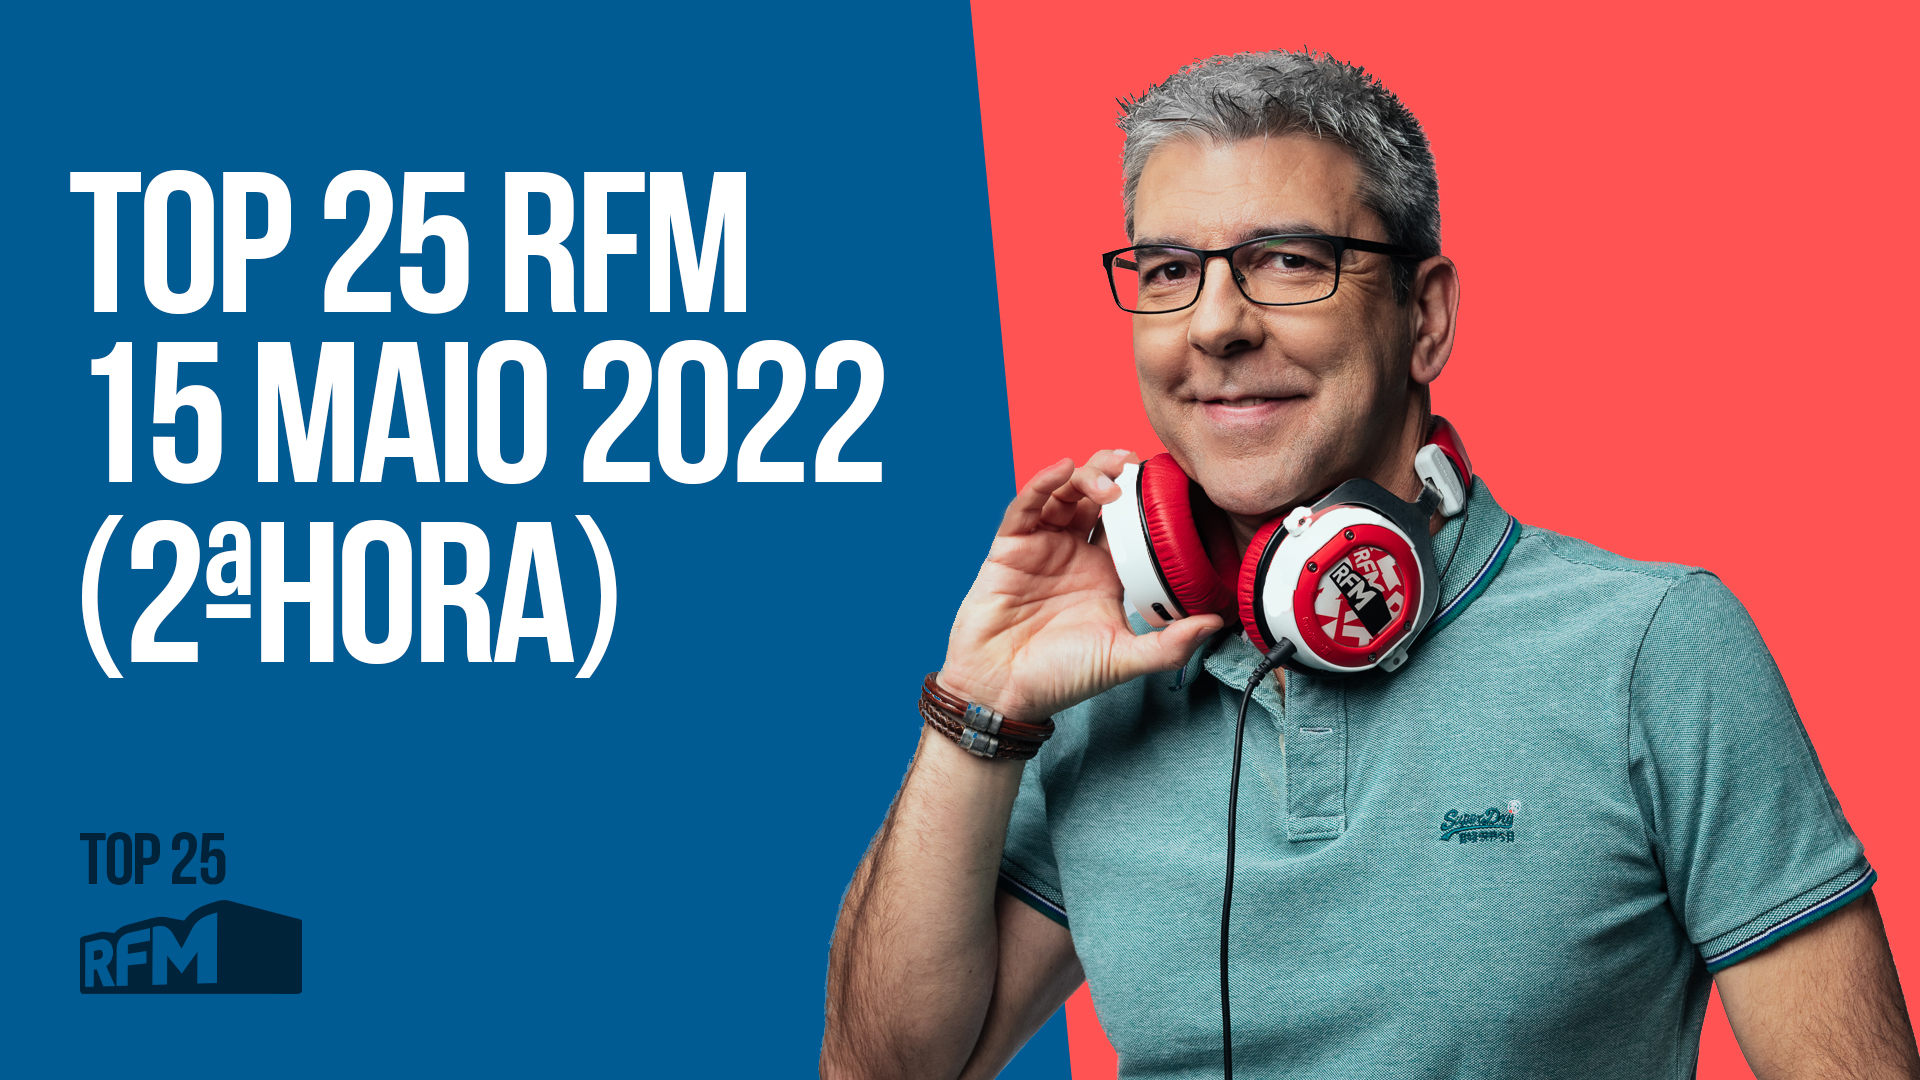 TOP 25 RFM 15 MAIO DE 2022 - 2ª HORA